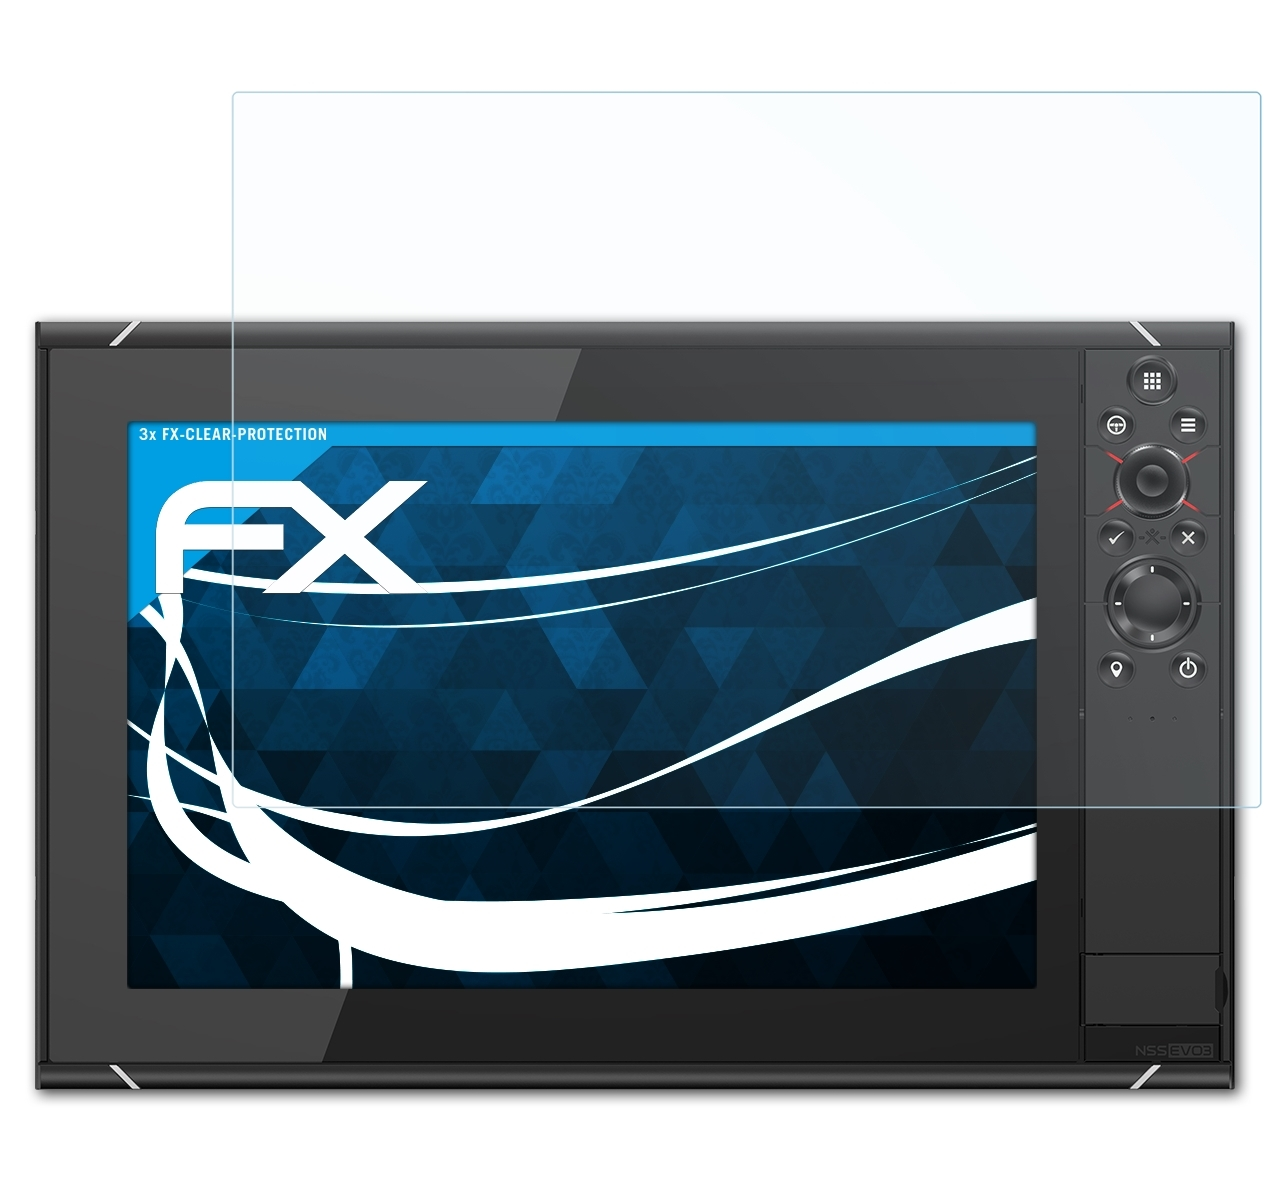 ATFOLIX 3x FX-Clear Displayschutz(für Simrad NSS12 evo3)